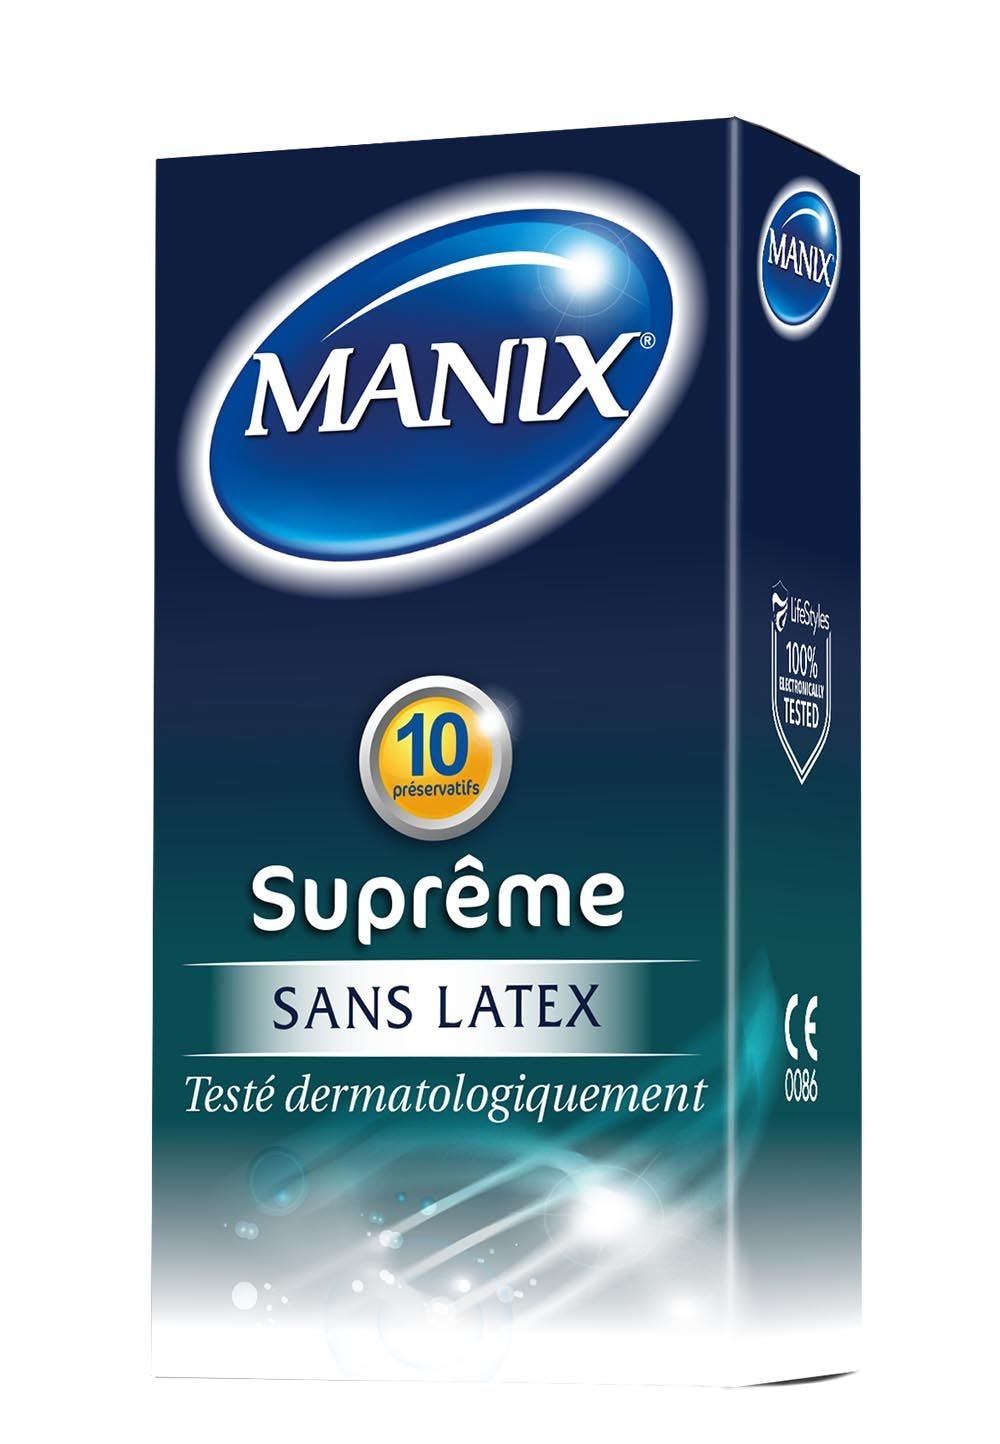 Dorcel - Préservatif Manix Supreme X 10 [Bien-être]